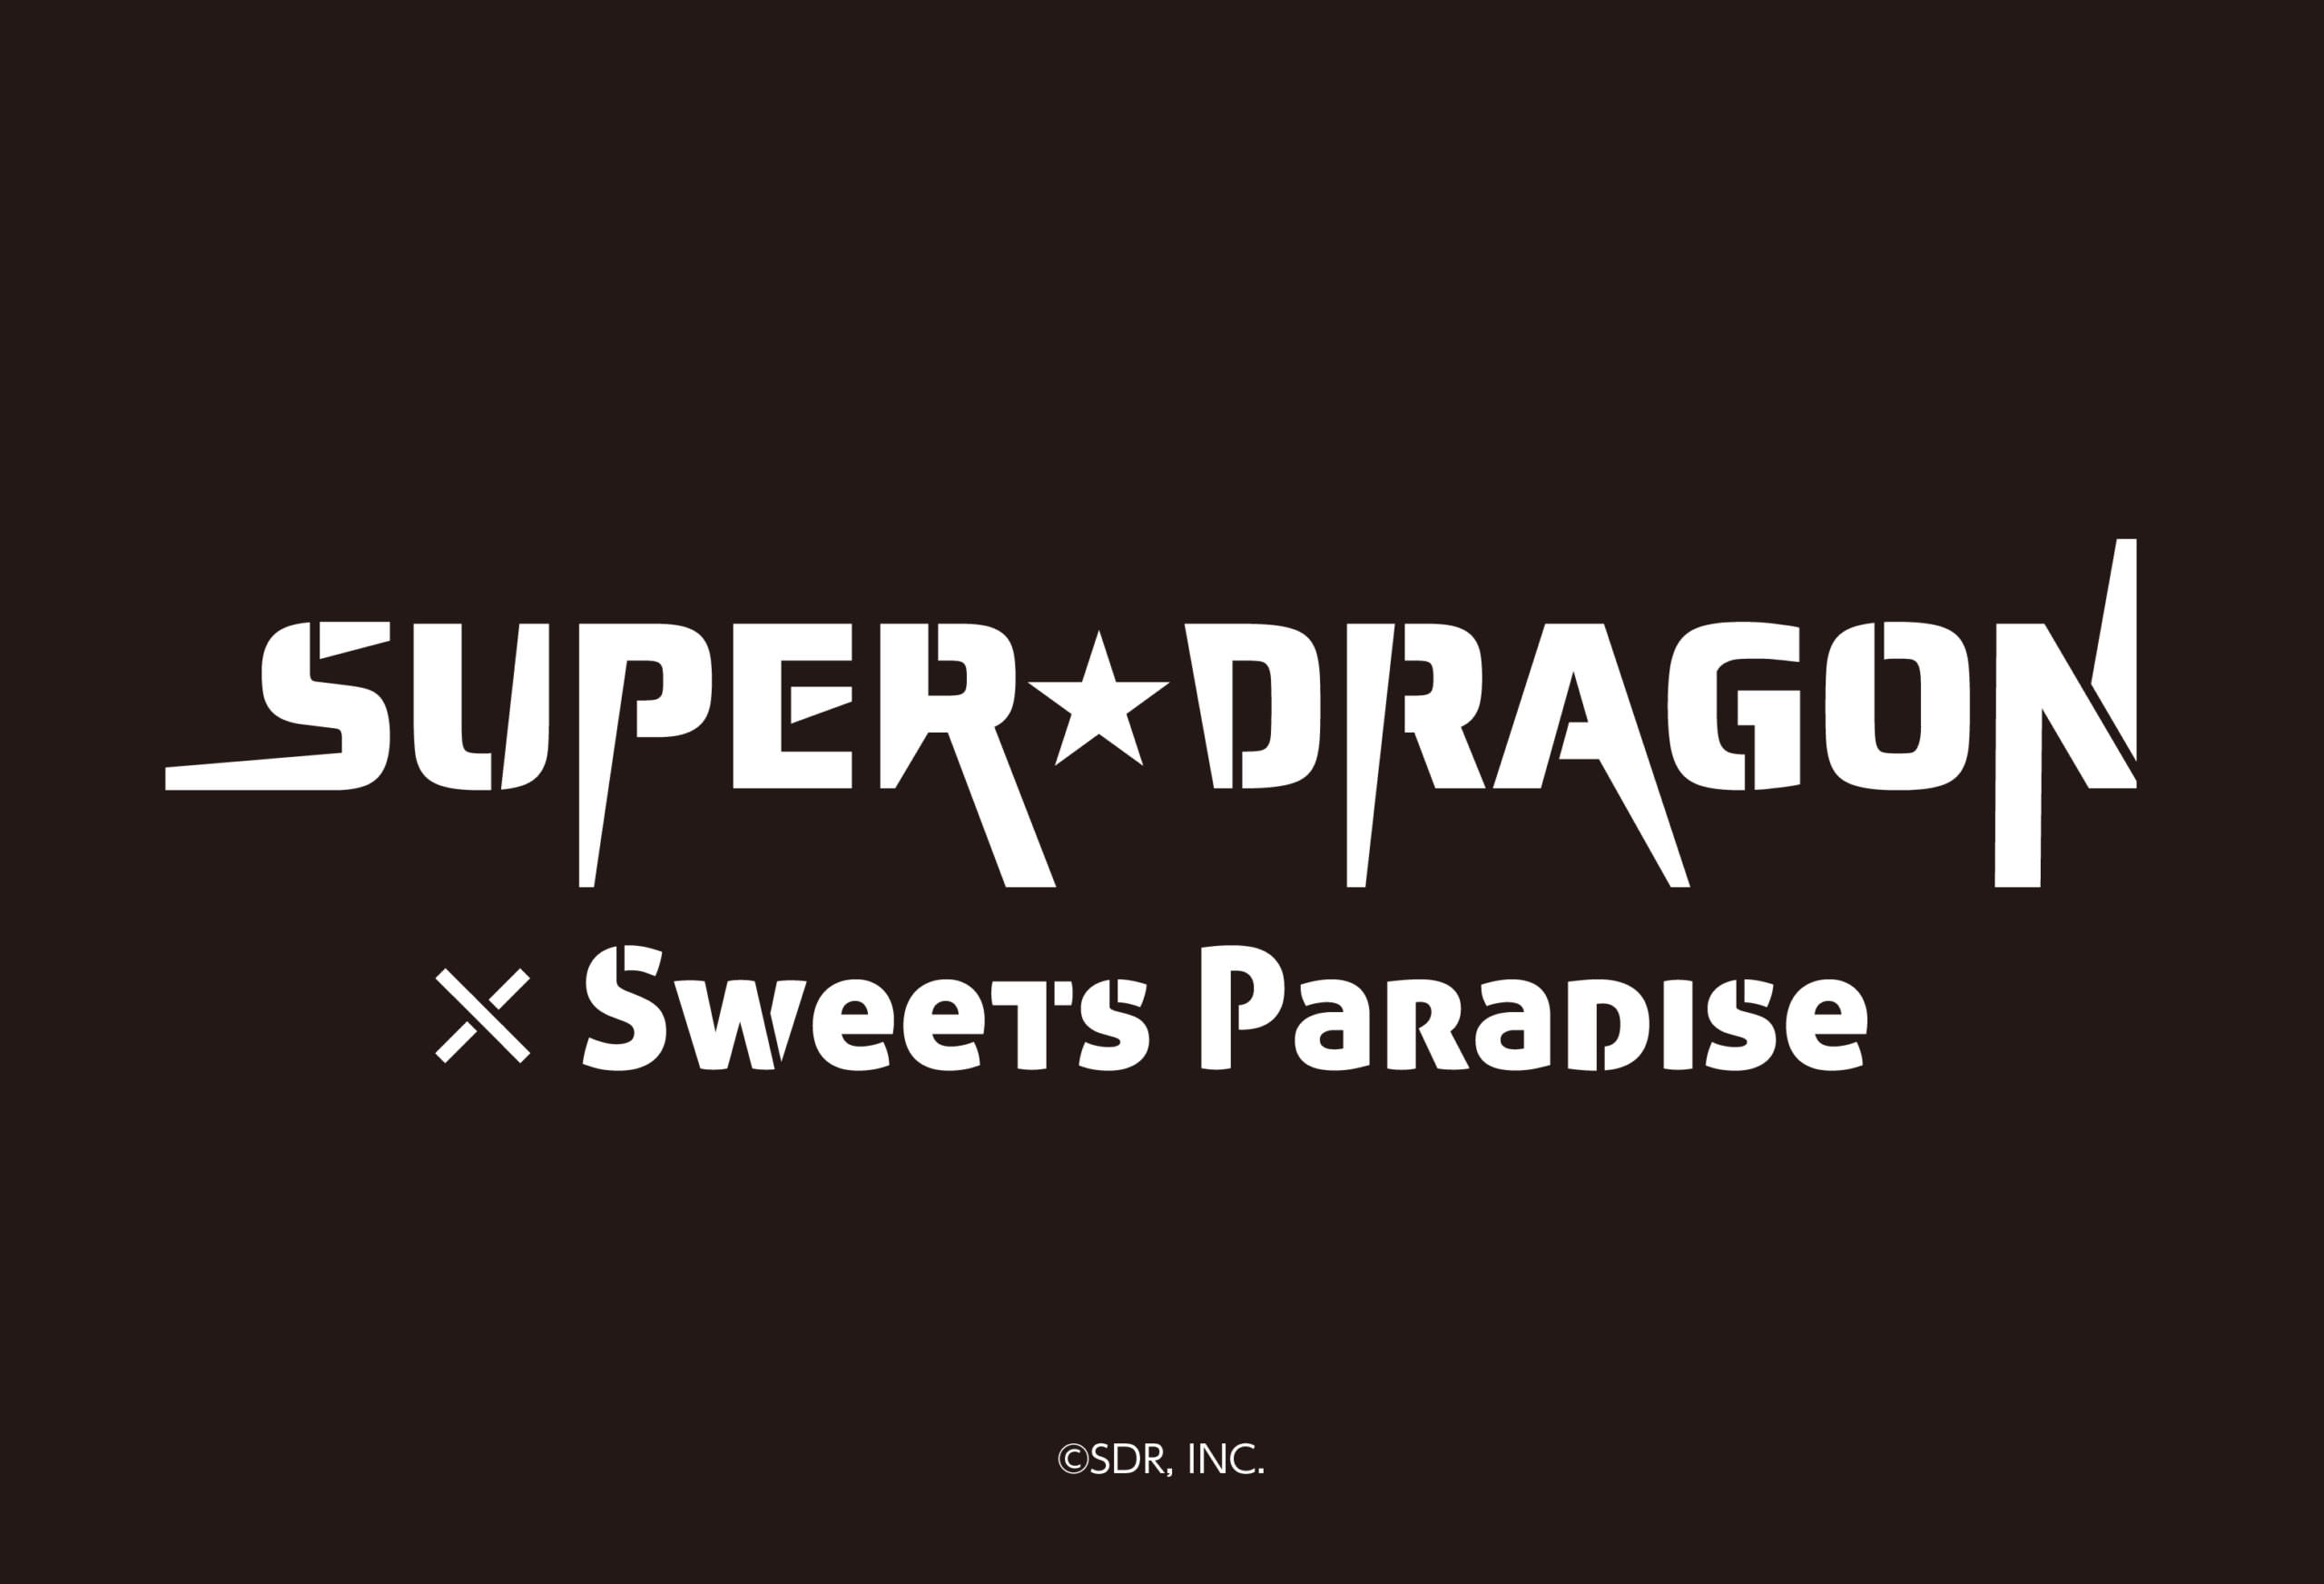 SUPER★DRAGONカフェ in スイーツパラダイス3店舗 12.21-1.17 開催!